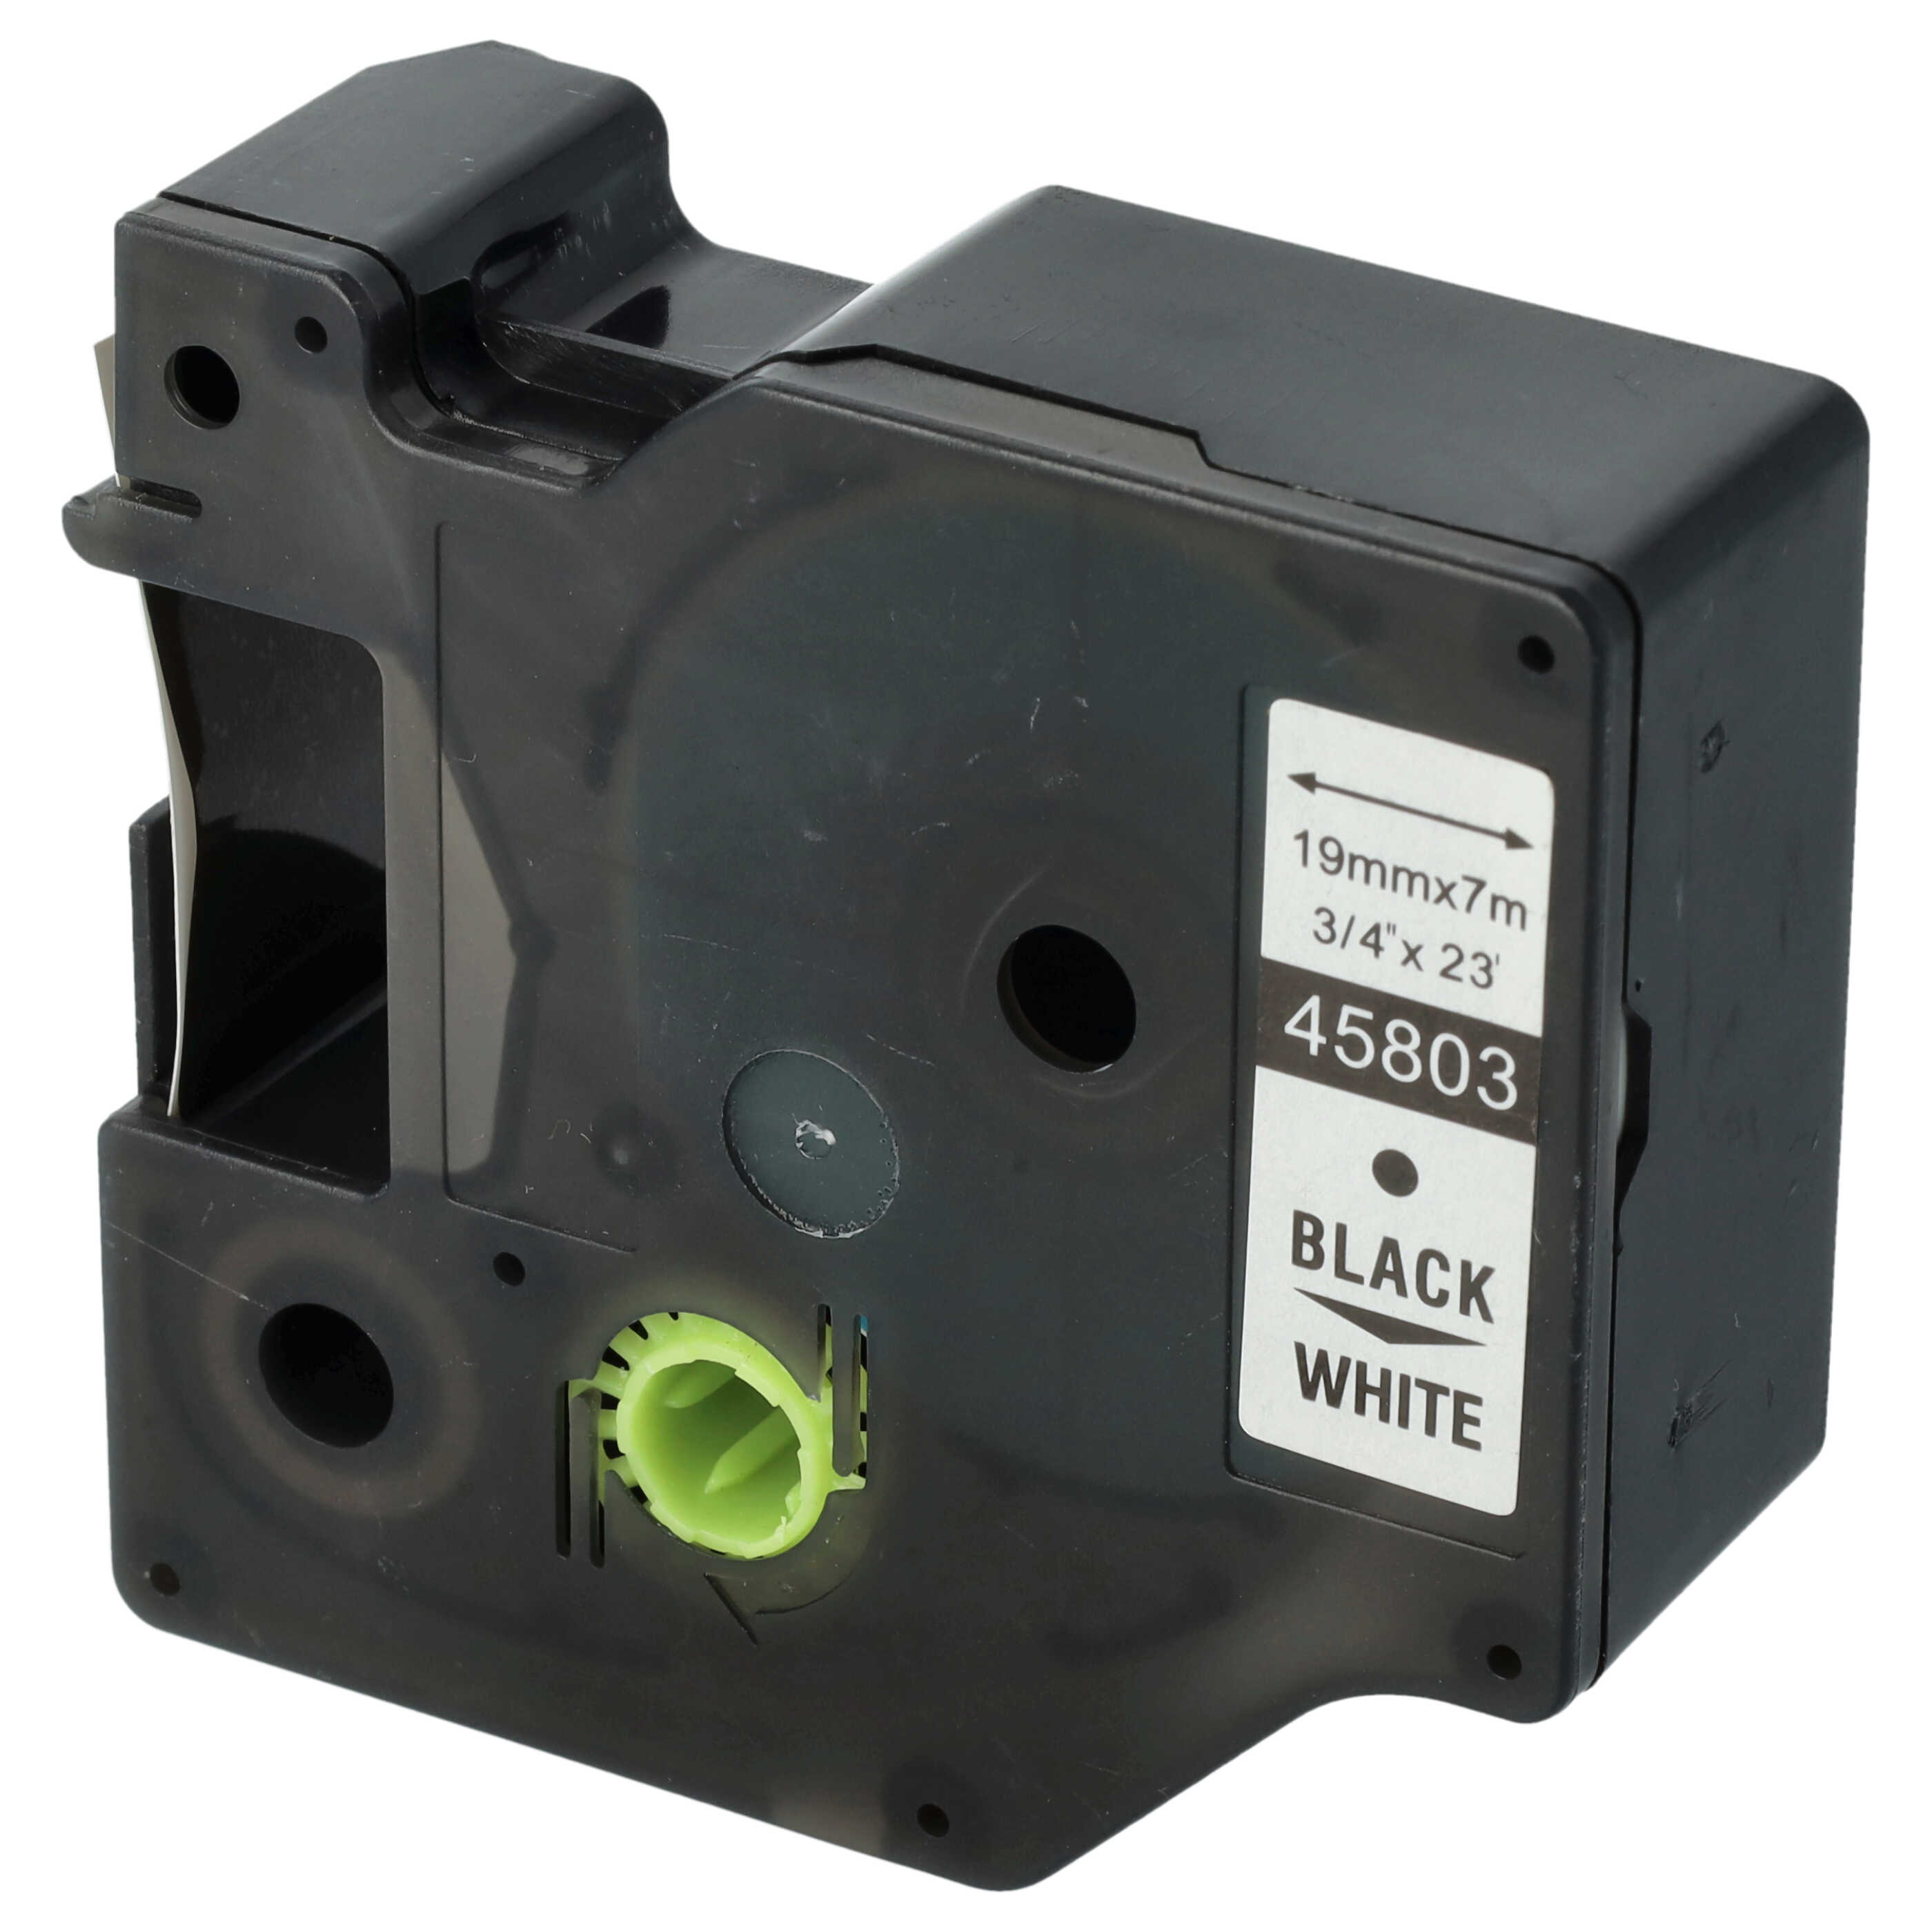 5x Cassetta nastro sostituisce Dymo 45803, D1, S0720830 per etichettatrice Dymo 19mm nero su bianco